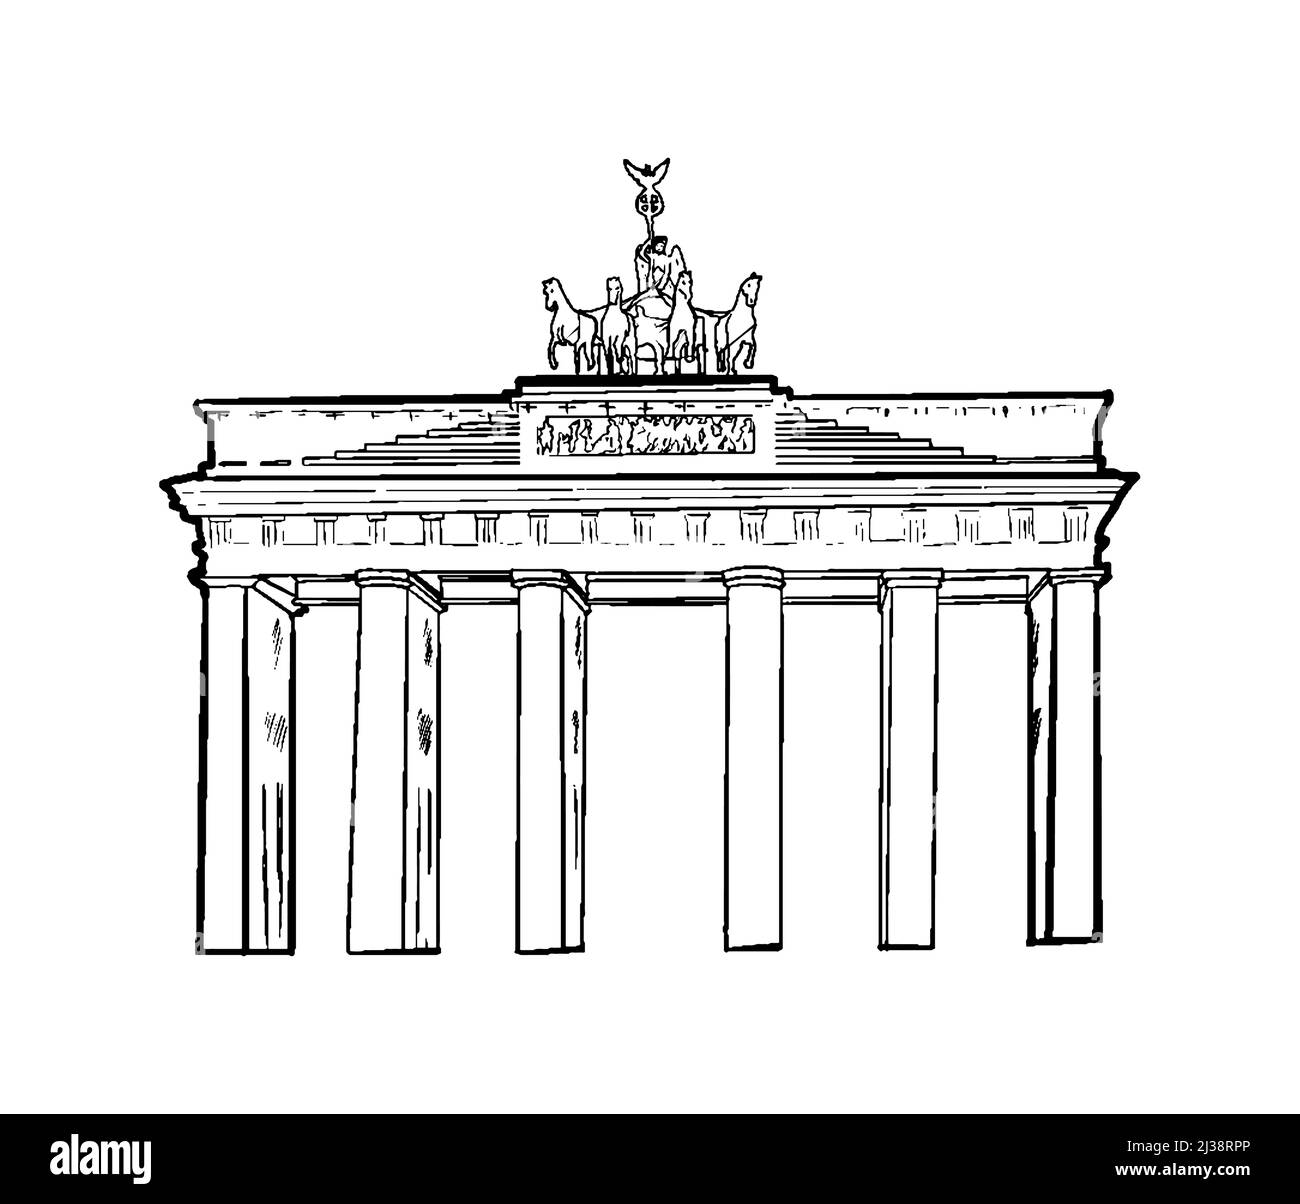 Бранденбургские ворота рисунок